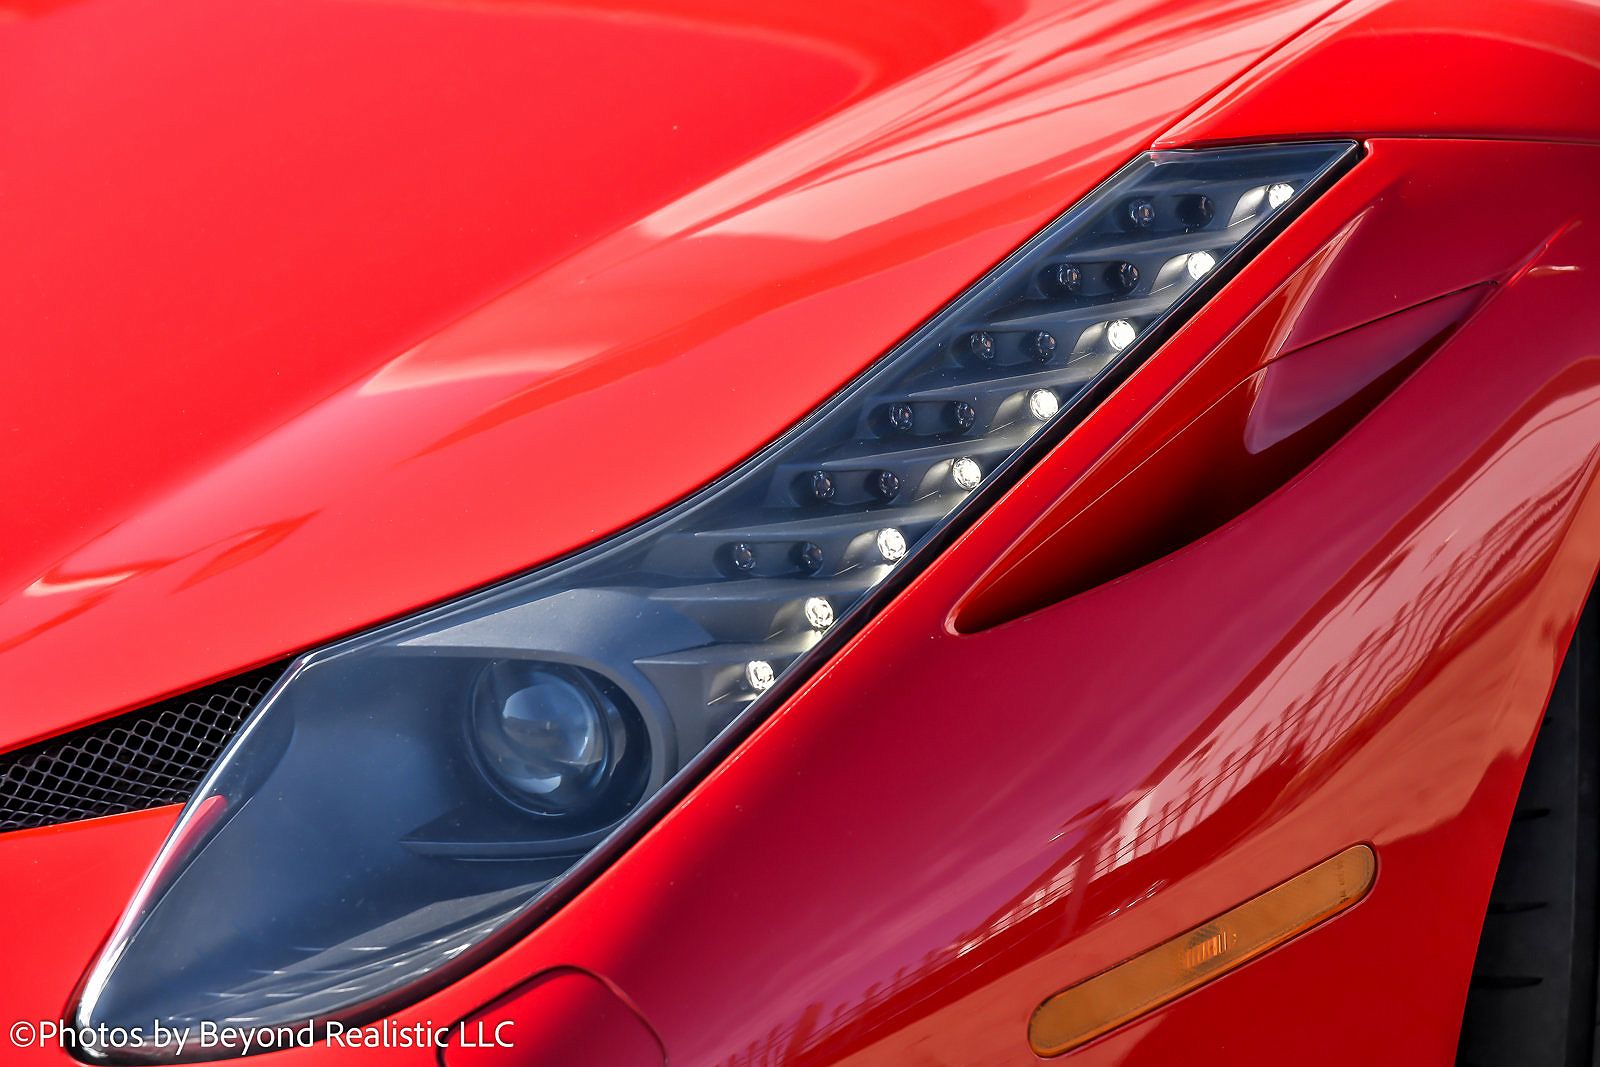 2014 Ferrari 458 Italia image 11